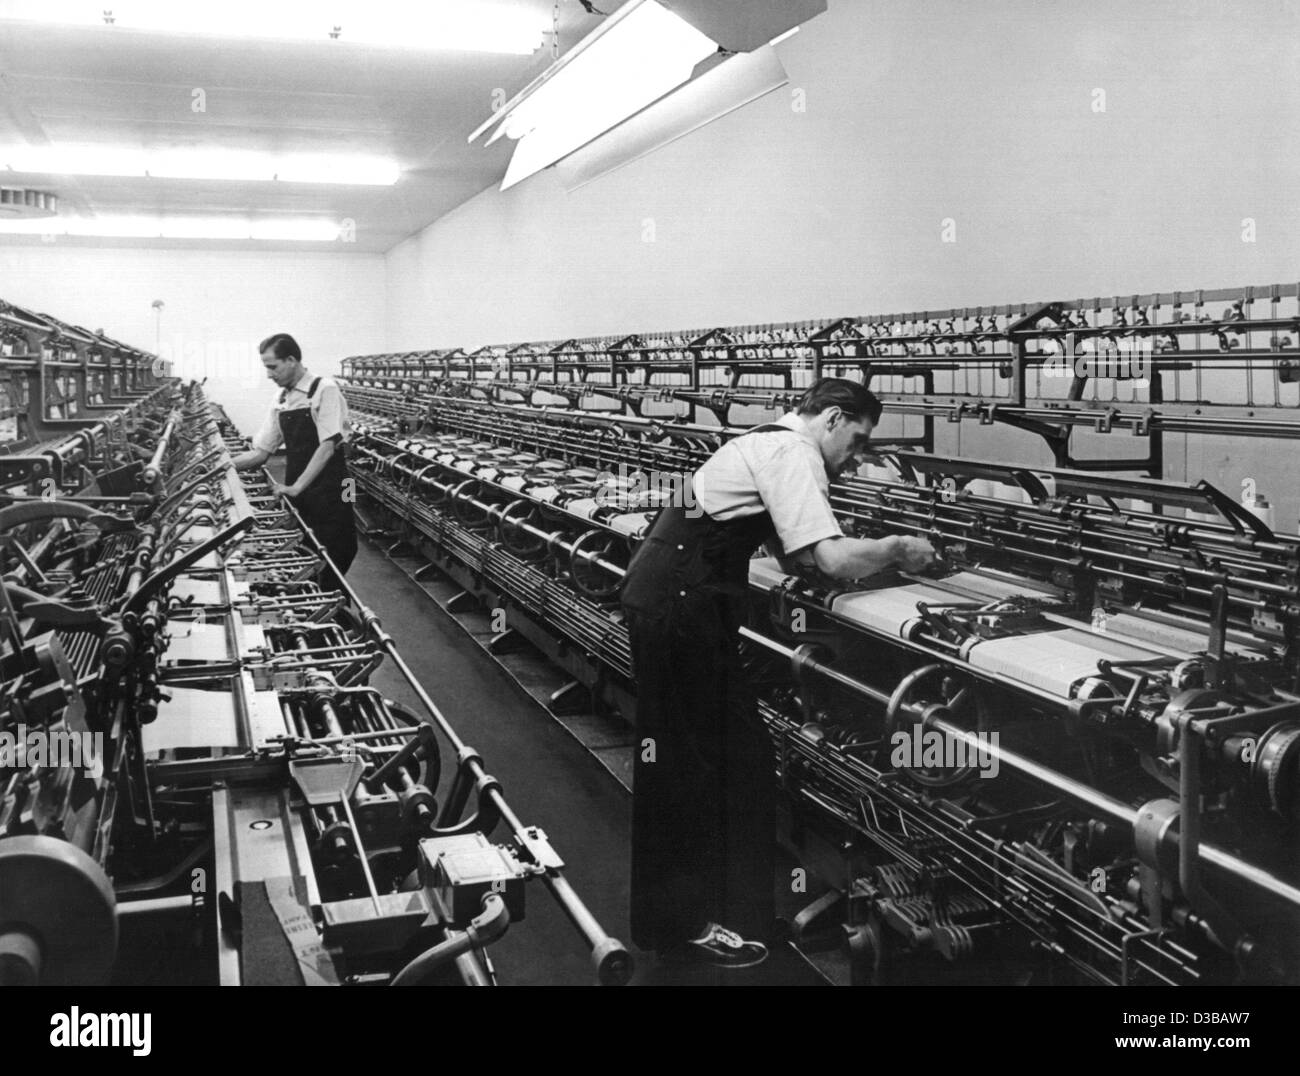 (Dpa-Dateien) - zwei Arbeiter arbeiten die Geräte in einer Strumpf-Fabrik in den 1950er Jahren. Stockfoto